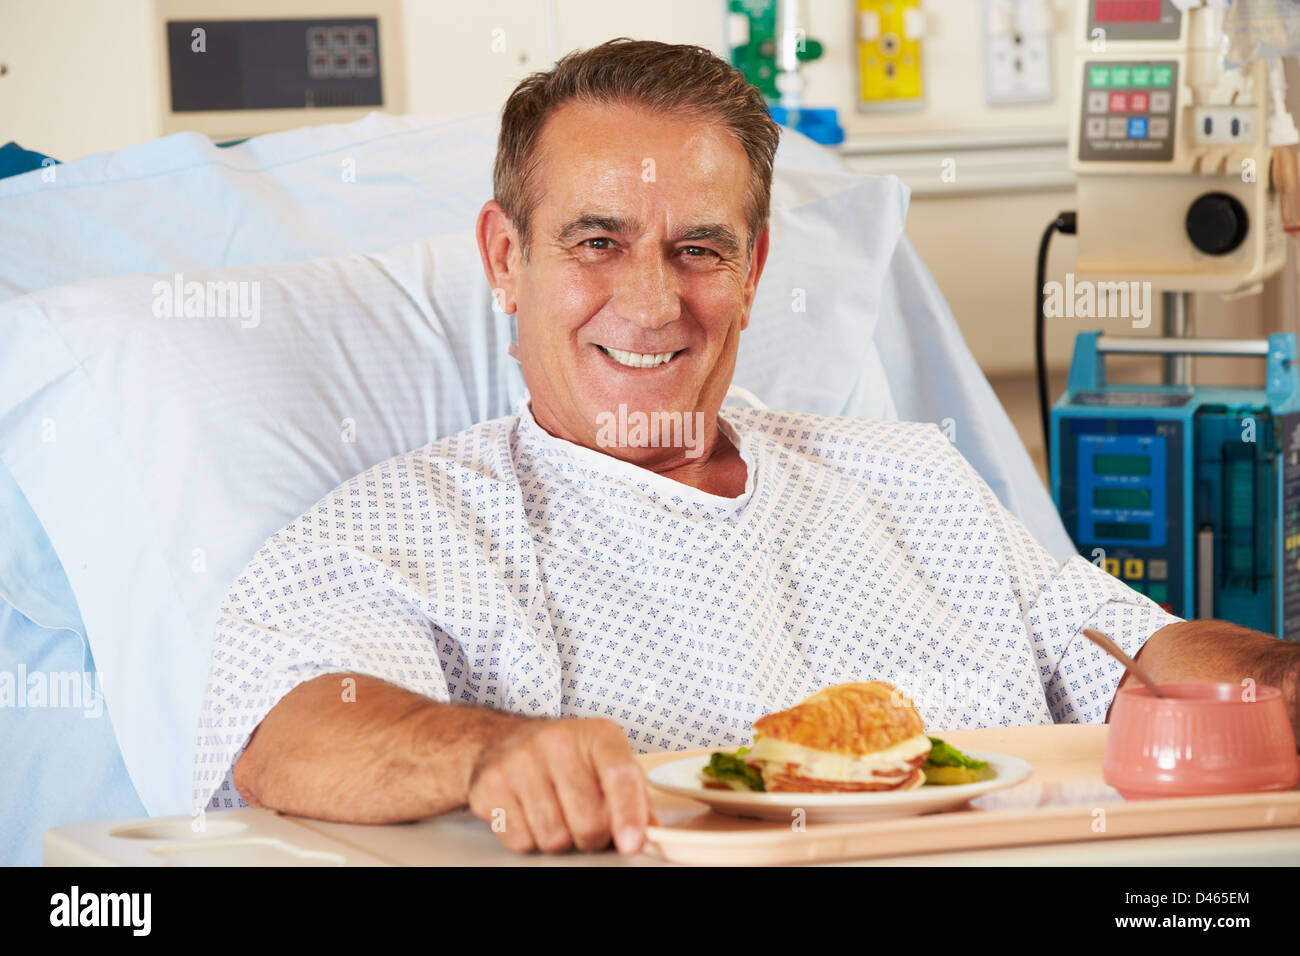 Männliche Patienten genießen Mahlzeit im Krankenhausbett Stockfoto